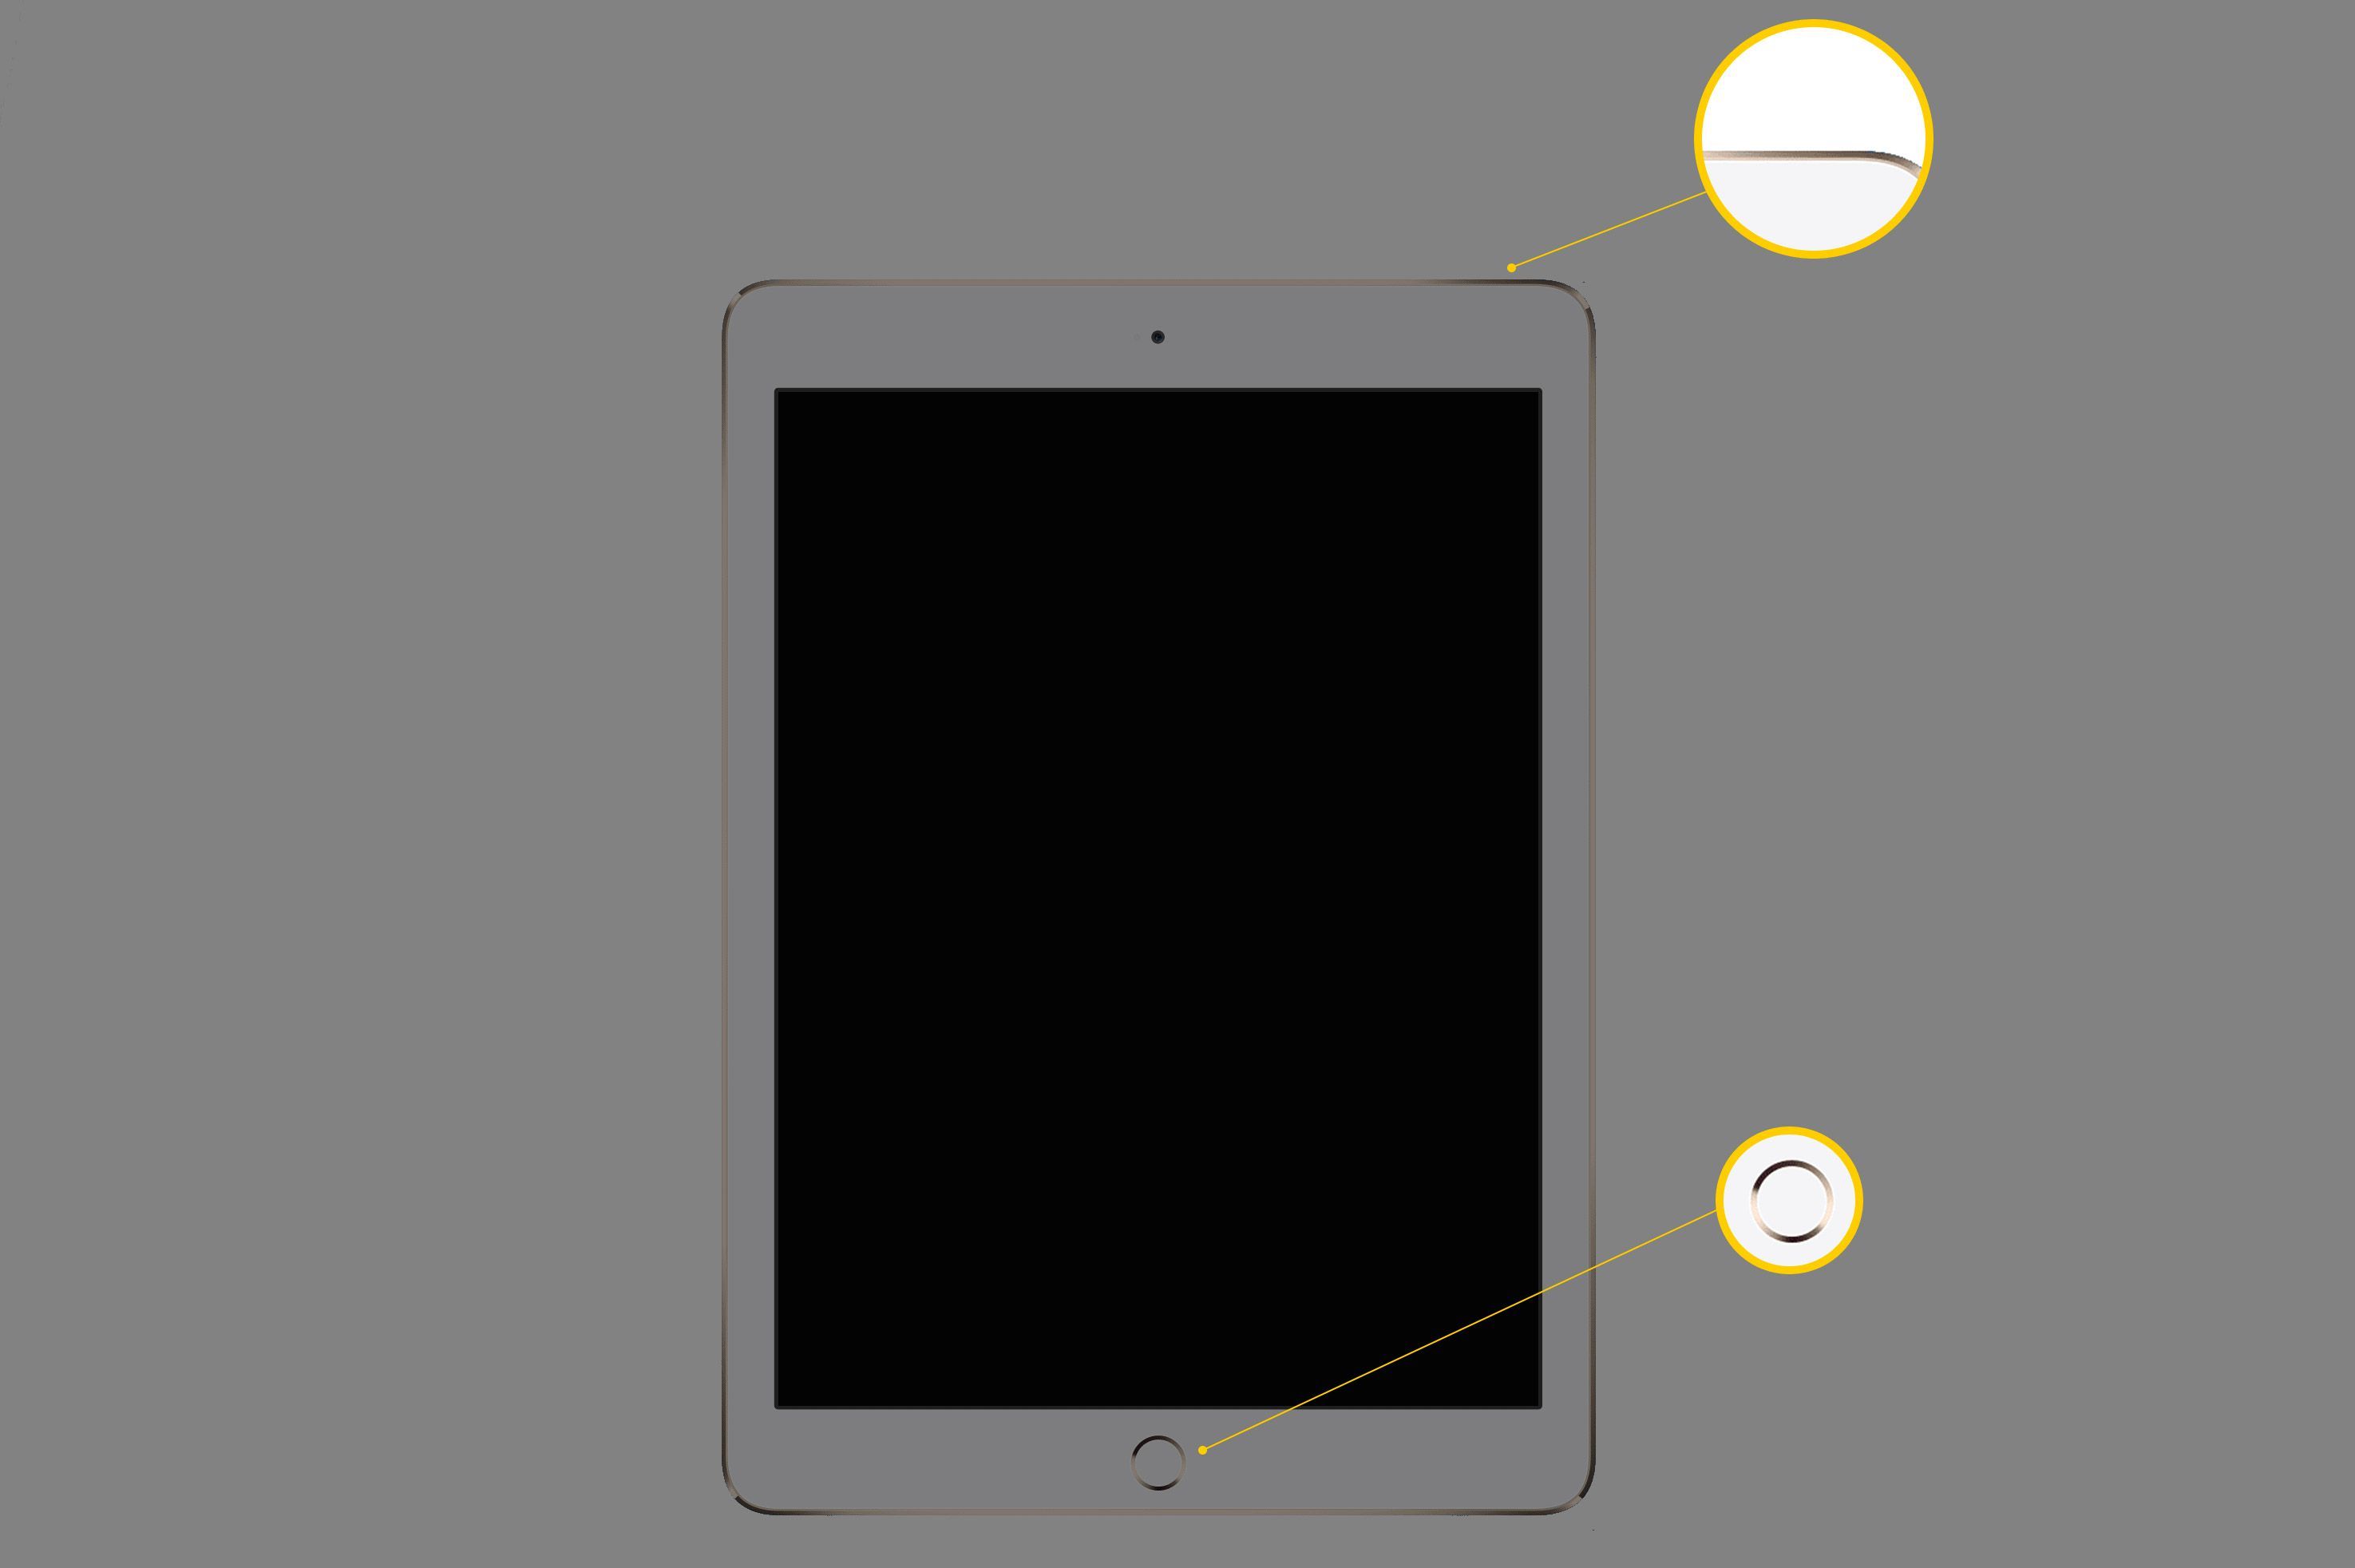 iPad с экраном, подсвечивающим кнопку «Режим сна / Пробуждение» в правом верхнем углу устройства и кнопку «Домой» в нижнем центре